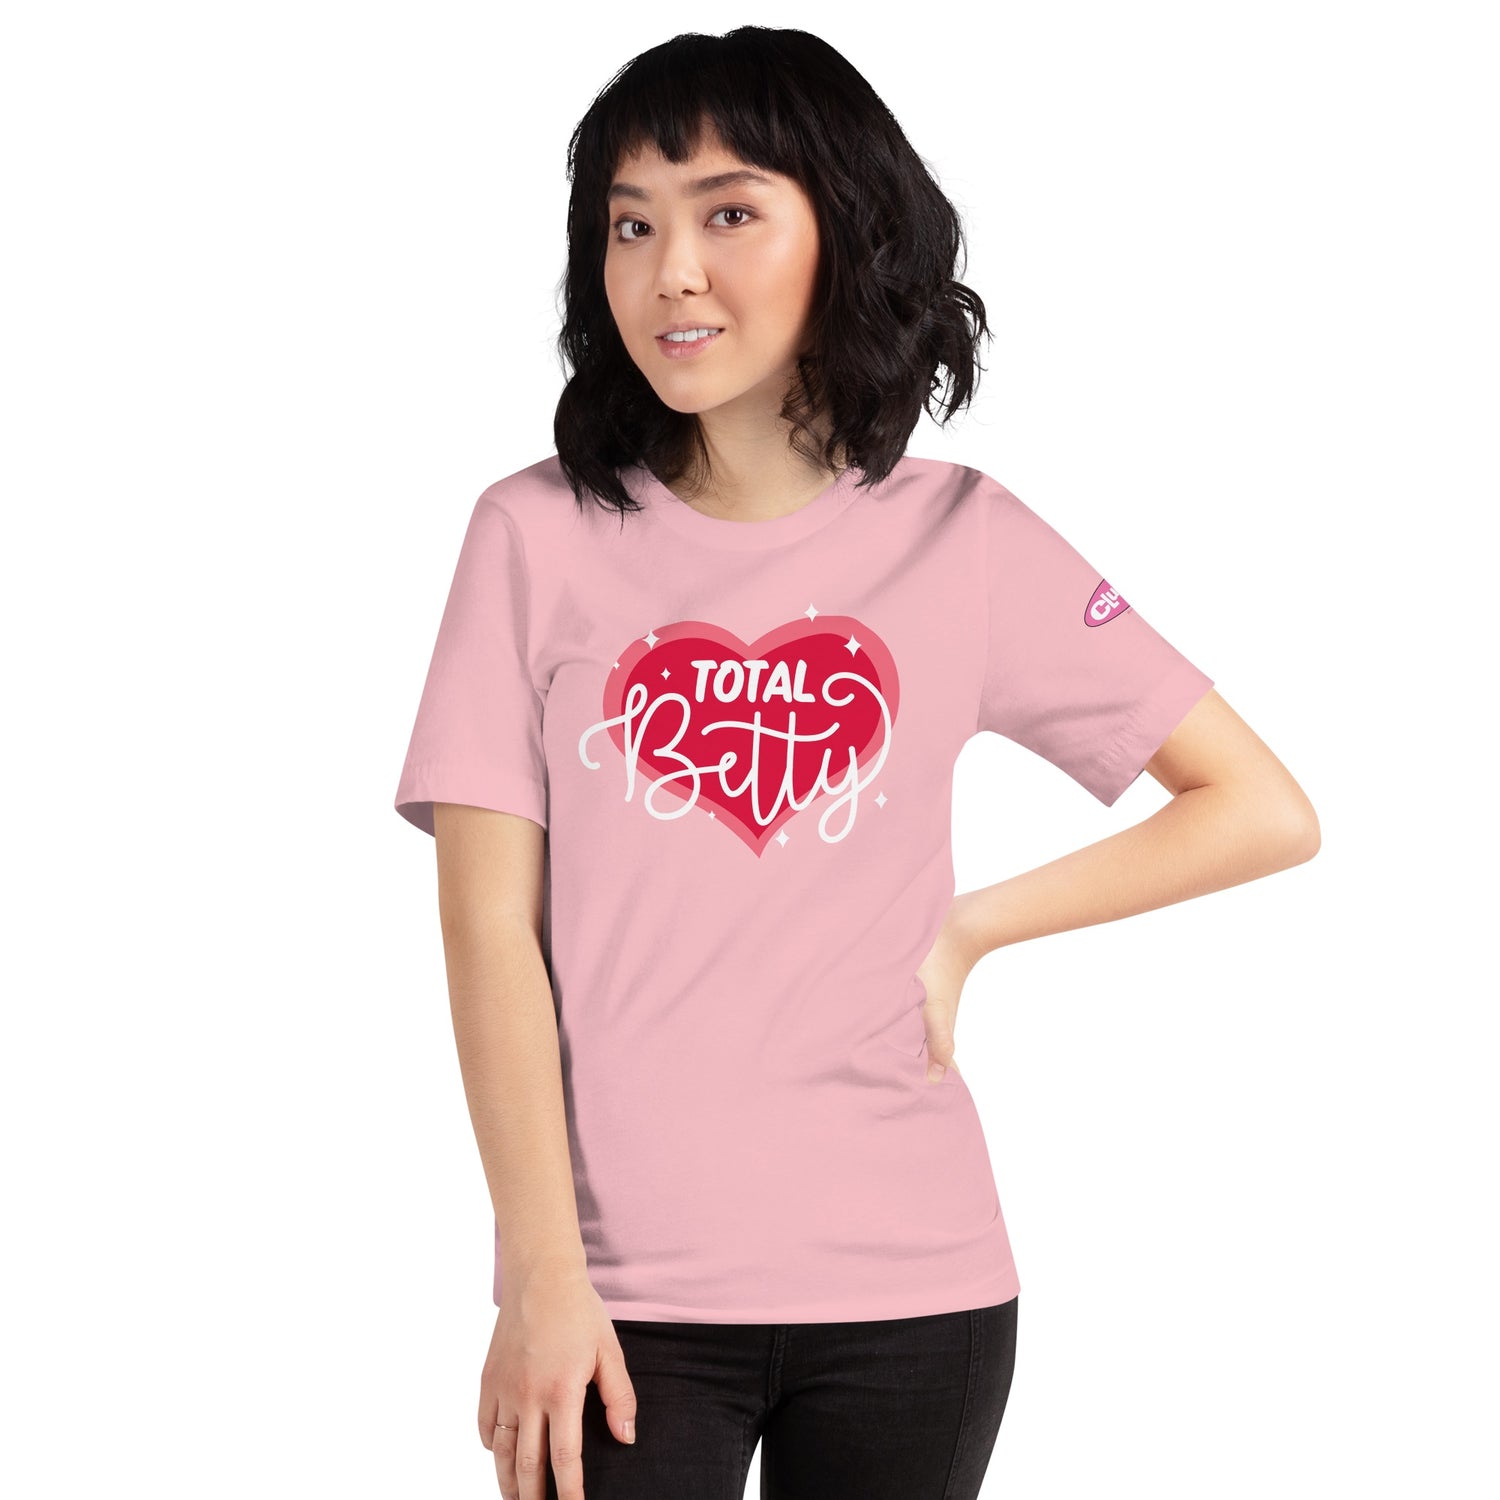 Clueless Total Betty Adult Short Sleeve T-Shirt